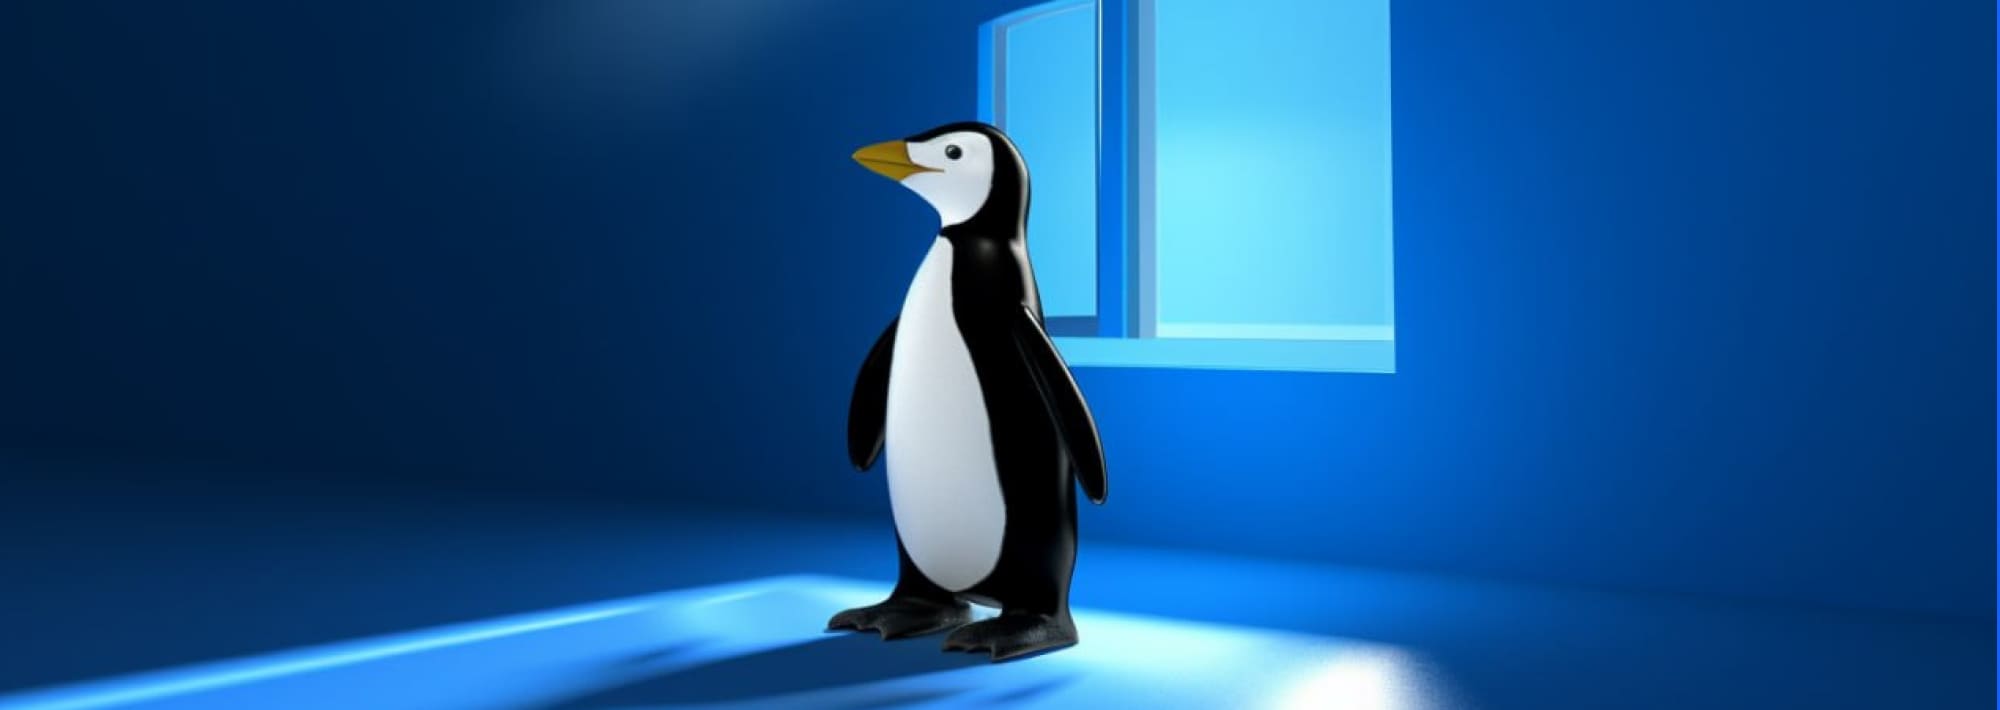 Linux вместо Windows: станут ли российские ОС альтернативой продукции Microsoft